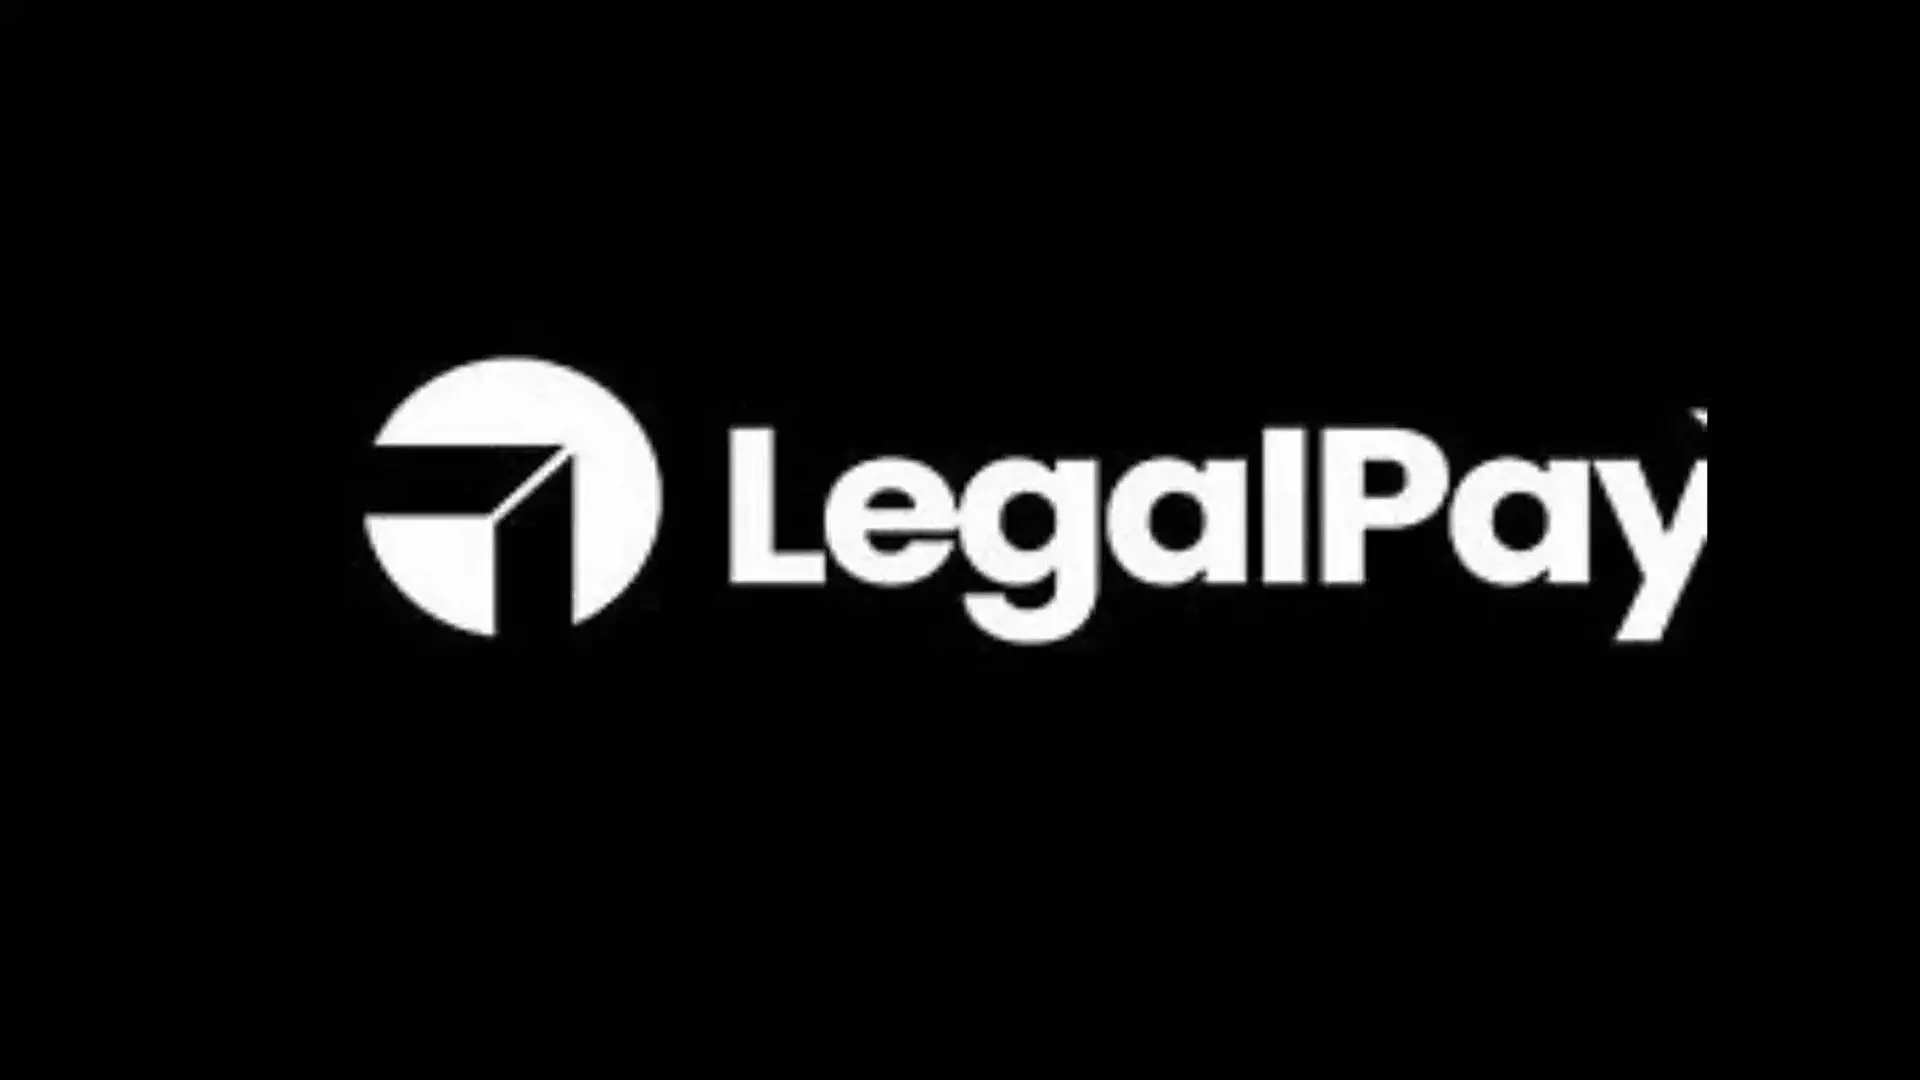 LegalPay ने चीनी लोन ऐप धोखाधड़ी से सुरक्षा के लिए ‘डेट डिफेंस’ लॉन्च किया